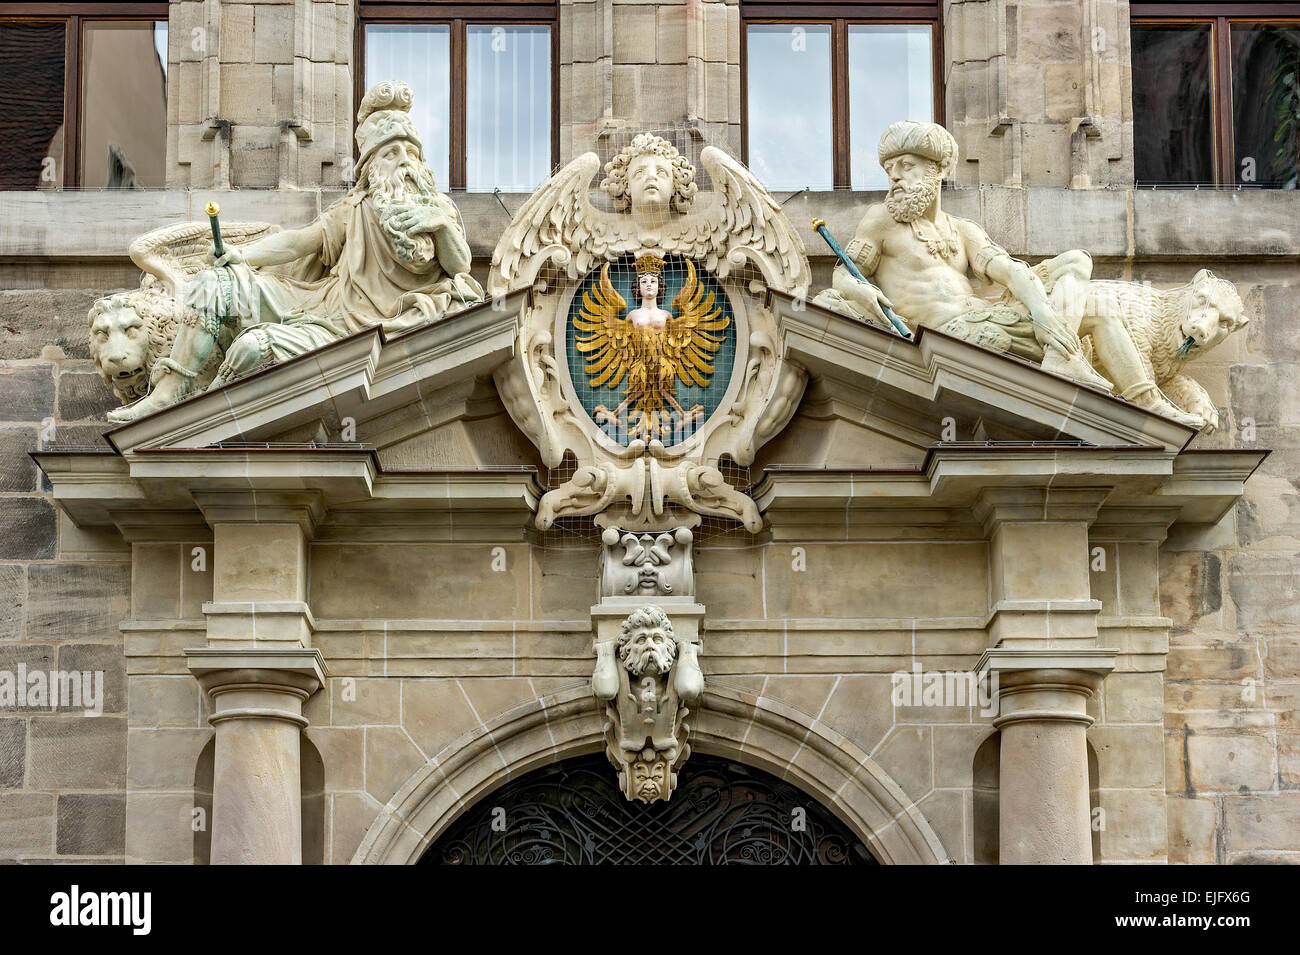 Les grandes armoiries de la ville de Nuremberg et les figures allégoriques de l'Ancien hôtel de ville, aussi Wolff'scher Bau, centre historique, Nuremberg Banque D'Images